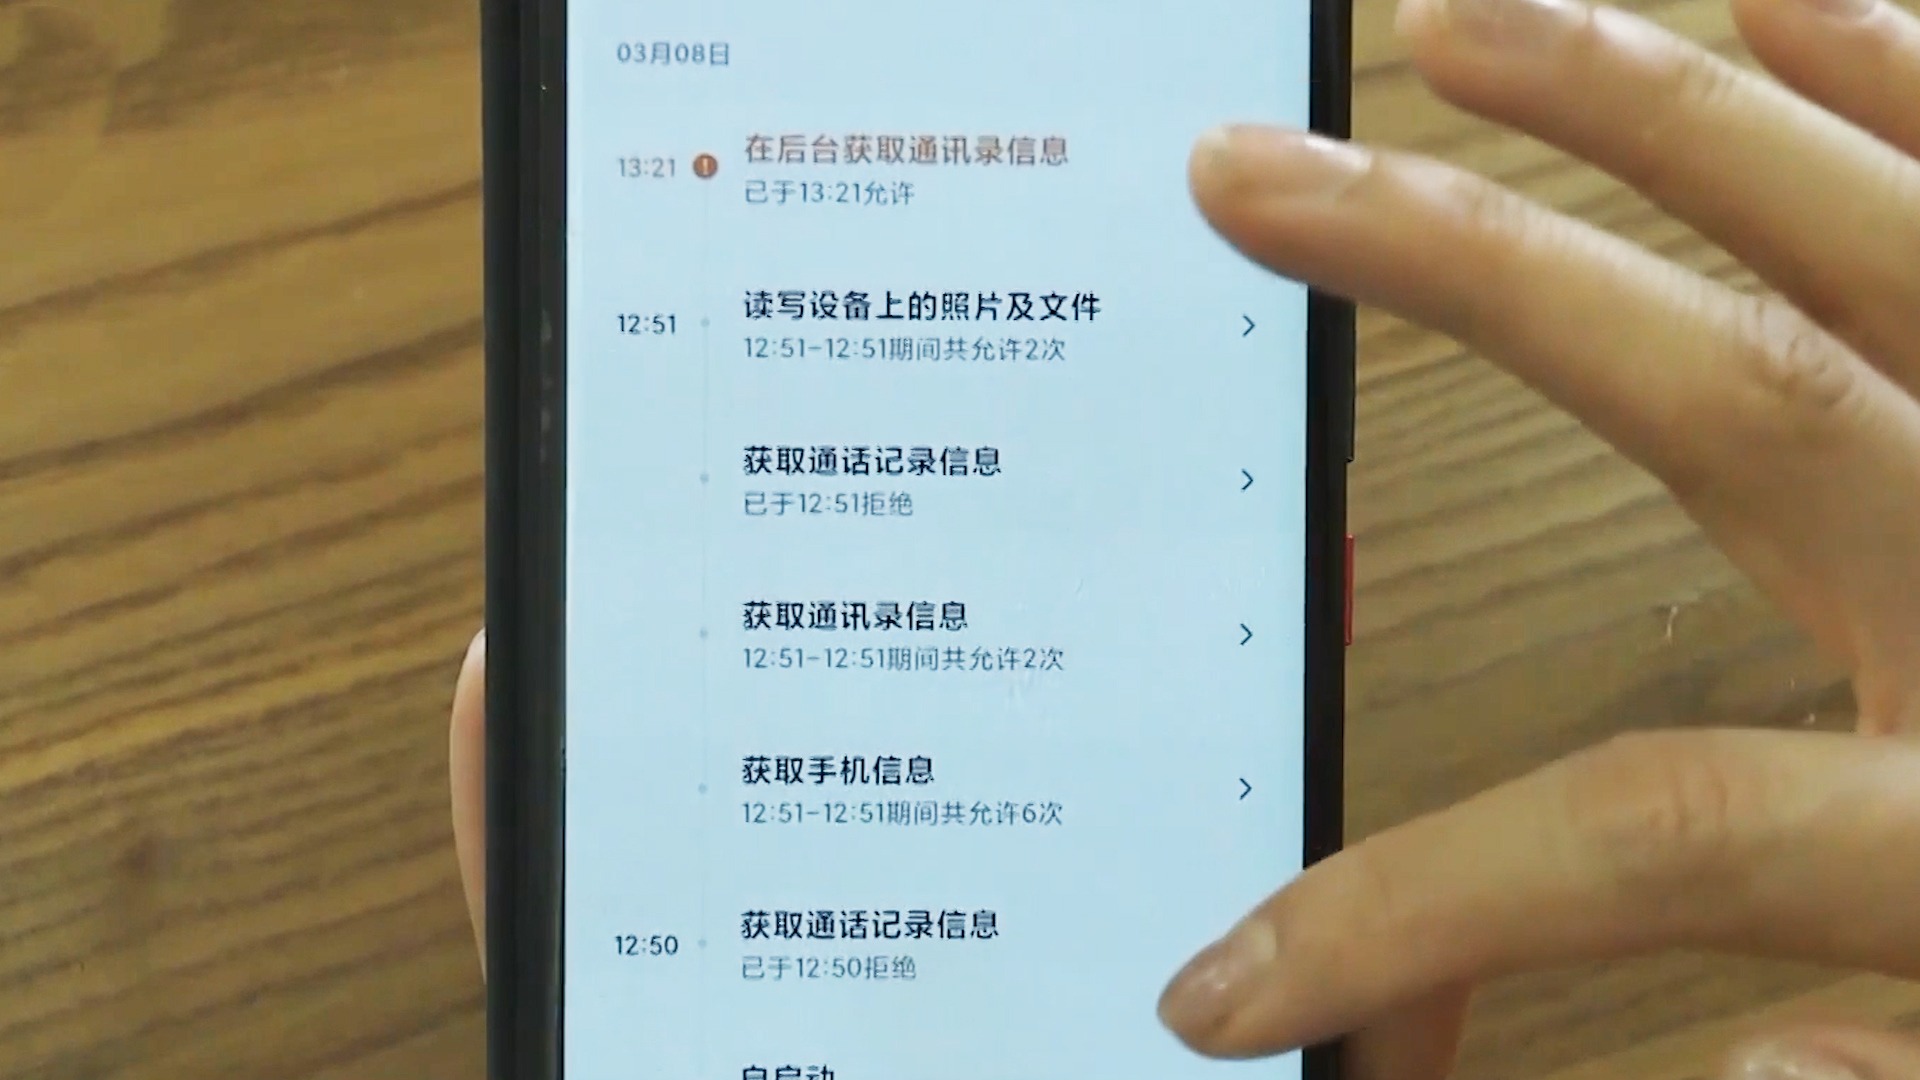 whatsapp中文手机版_中文版手机SDR软件_中文版手机steam